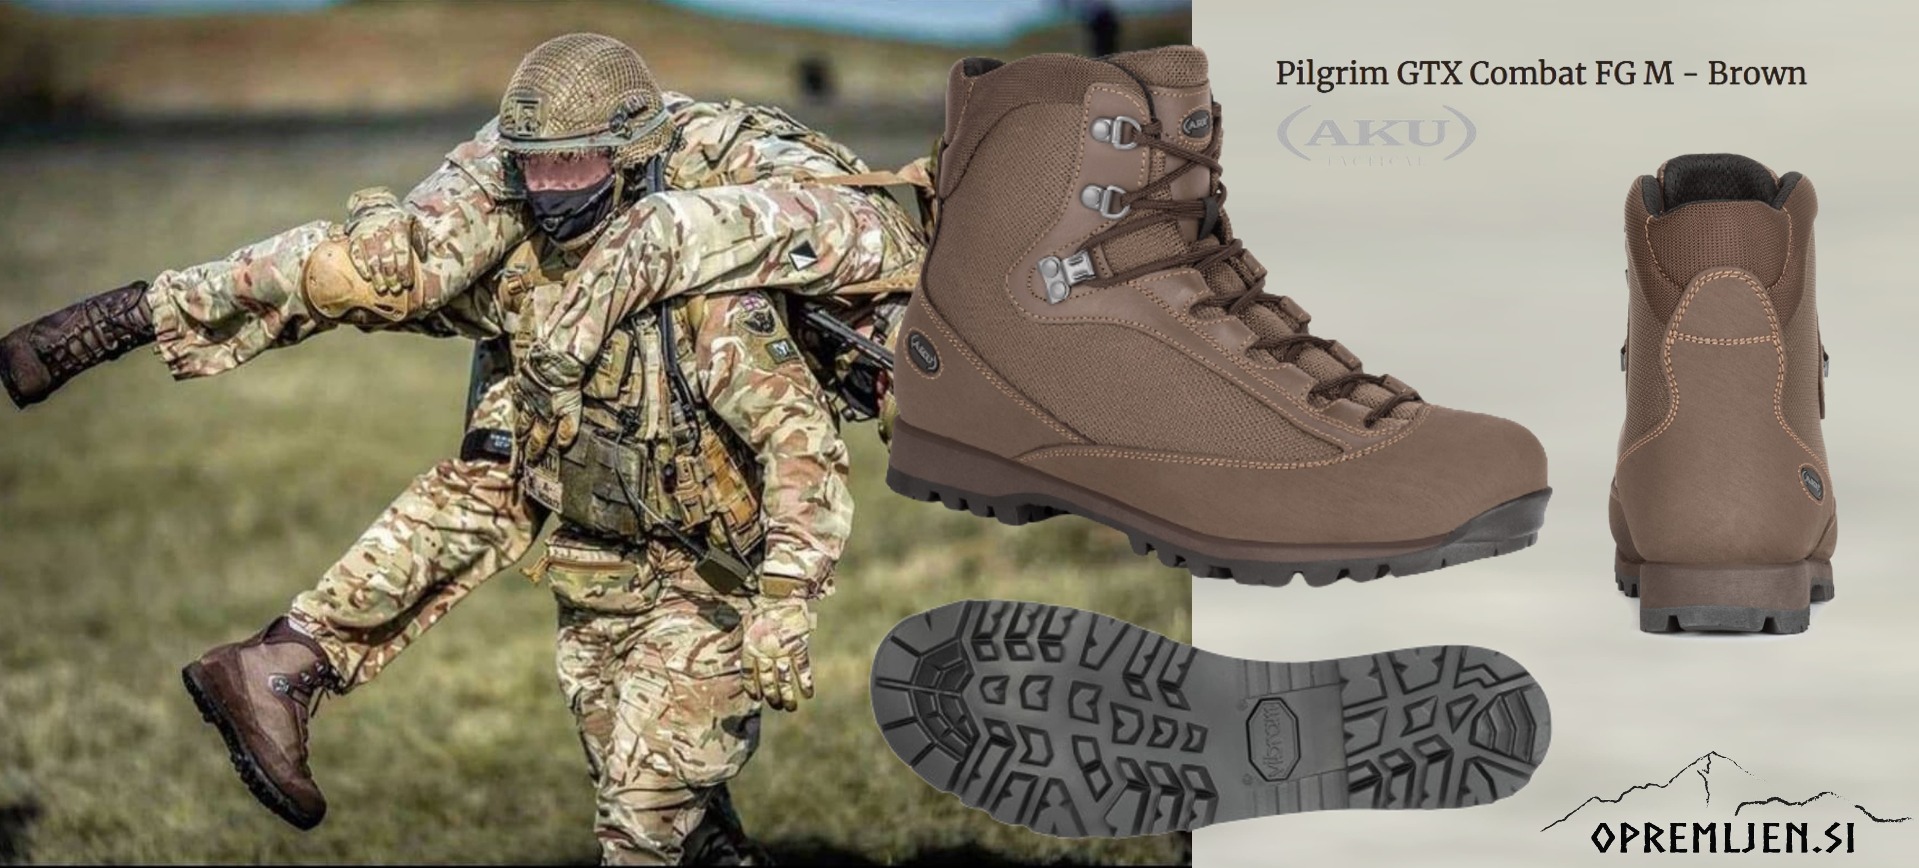 Pilgrim GTX Combat FG - Brown, profesionalna obutev za taktične operacije. Obutev z vodoodporno GORETEX membrano, nezdrsljivim VIBRAM podplatom, udobna in trpežna. Opremljen.si